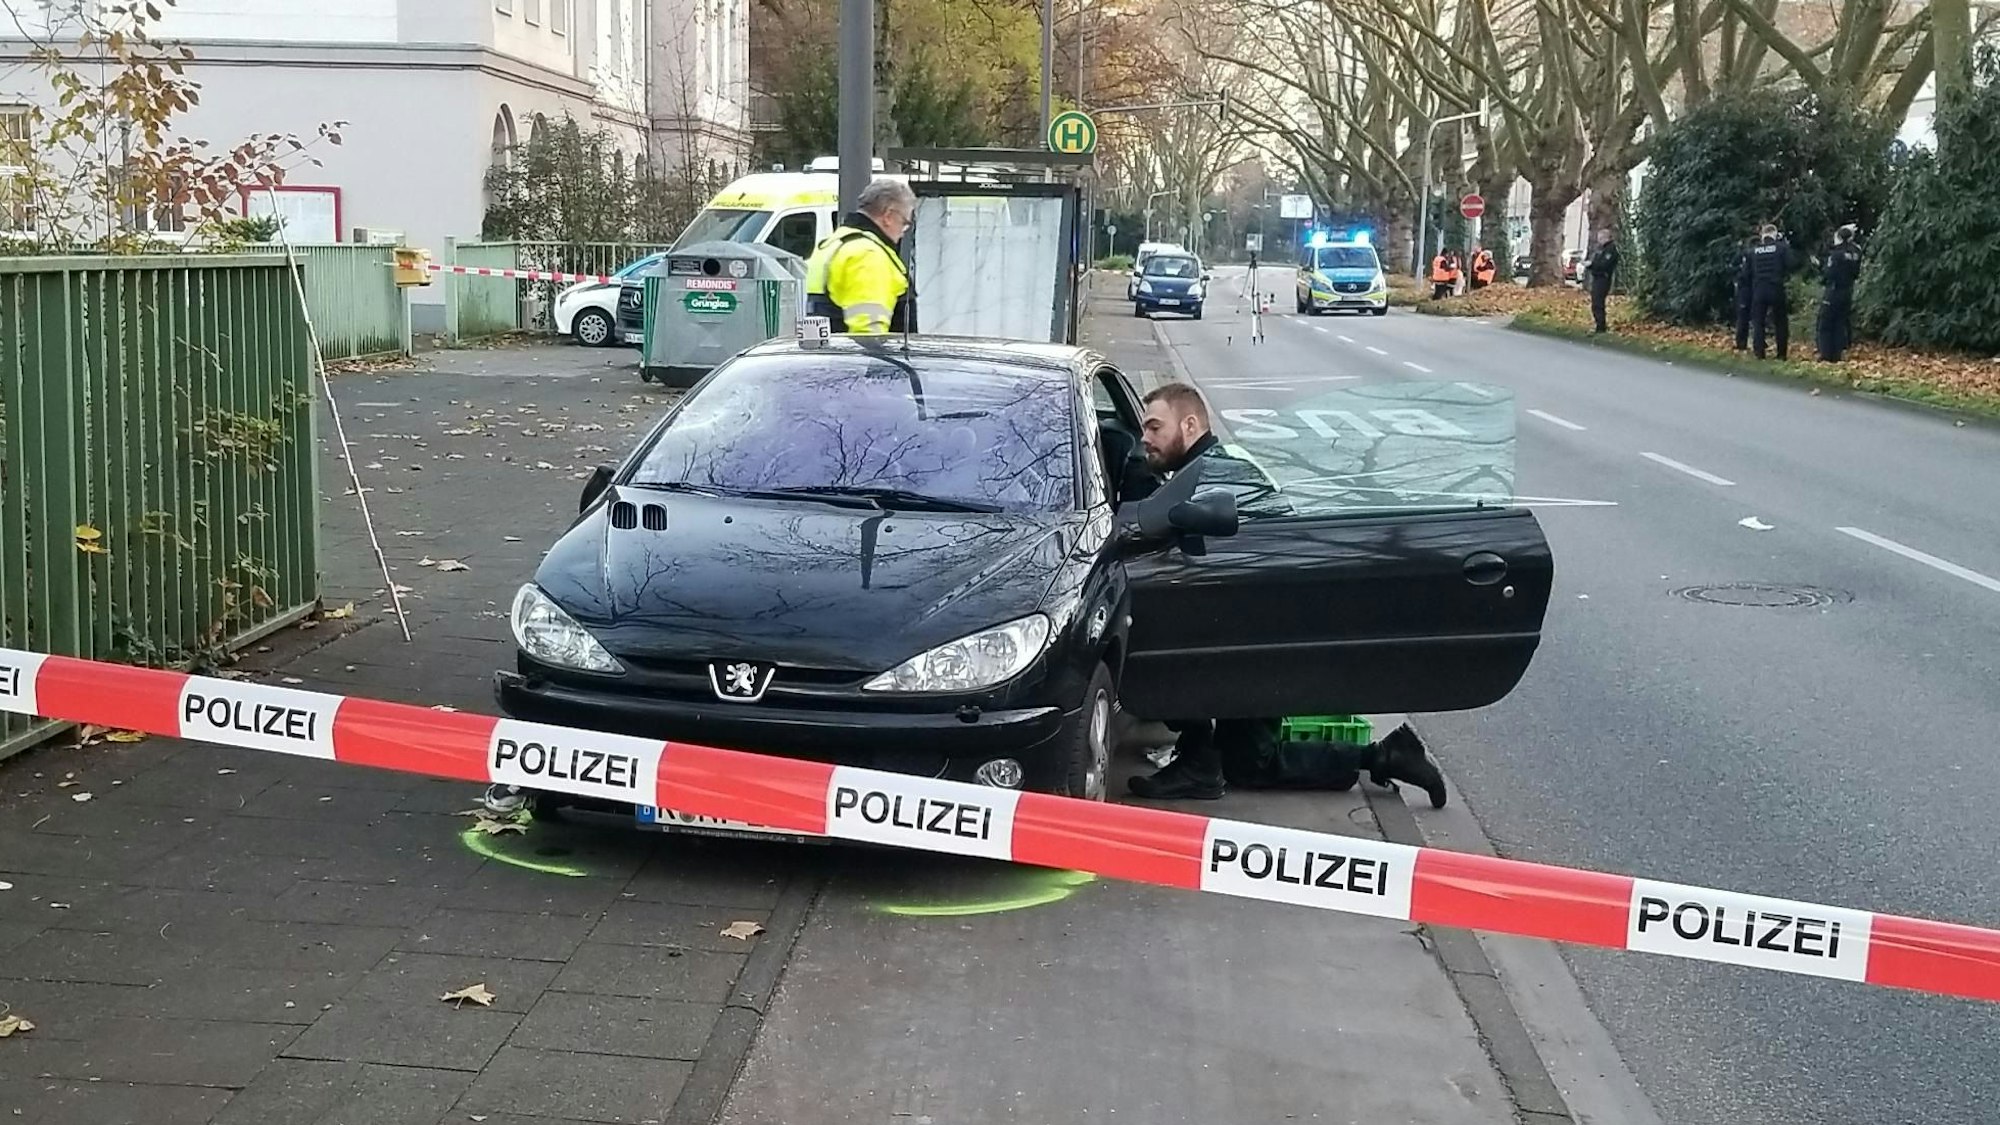 Flatterband sperrt eine Straße ab, ein Polizist kniet in der offenen Tür eines verunglückten Autos.